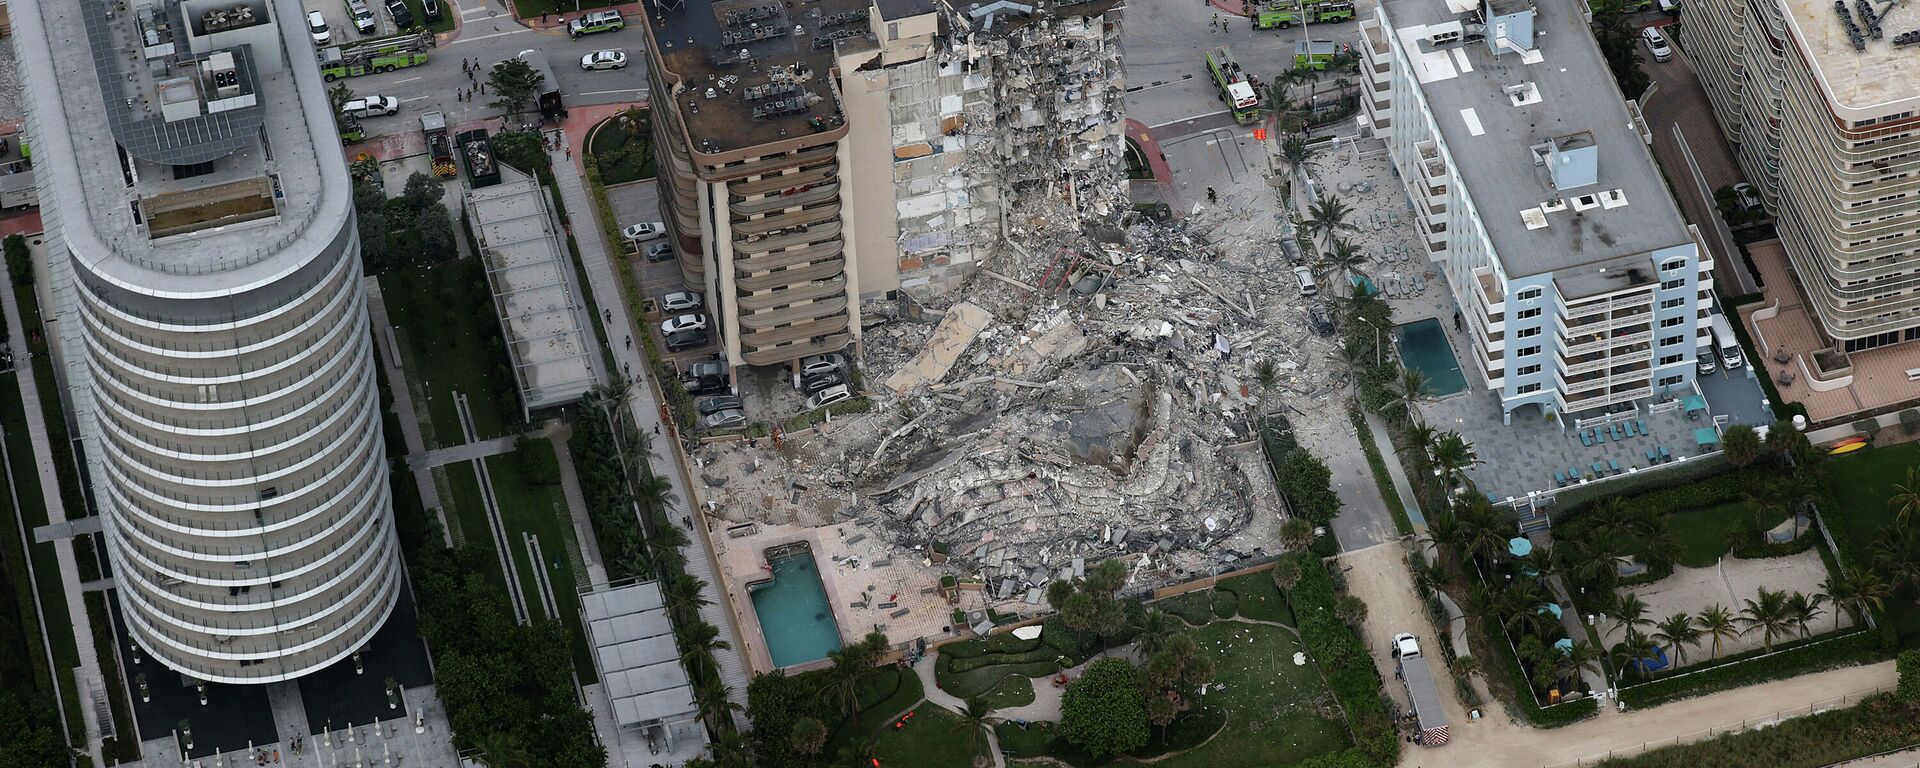 La parte trasera del edificio Champlain Towers South Condo que se derrumbó el 24 de junio, 2021 en Miami - Sputnik Mundo, 1920, 24.06.2021